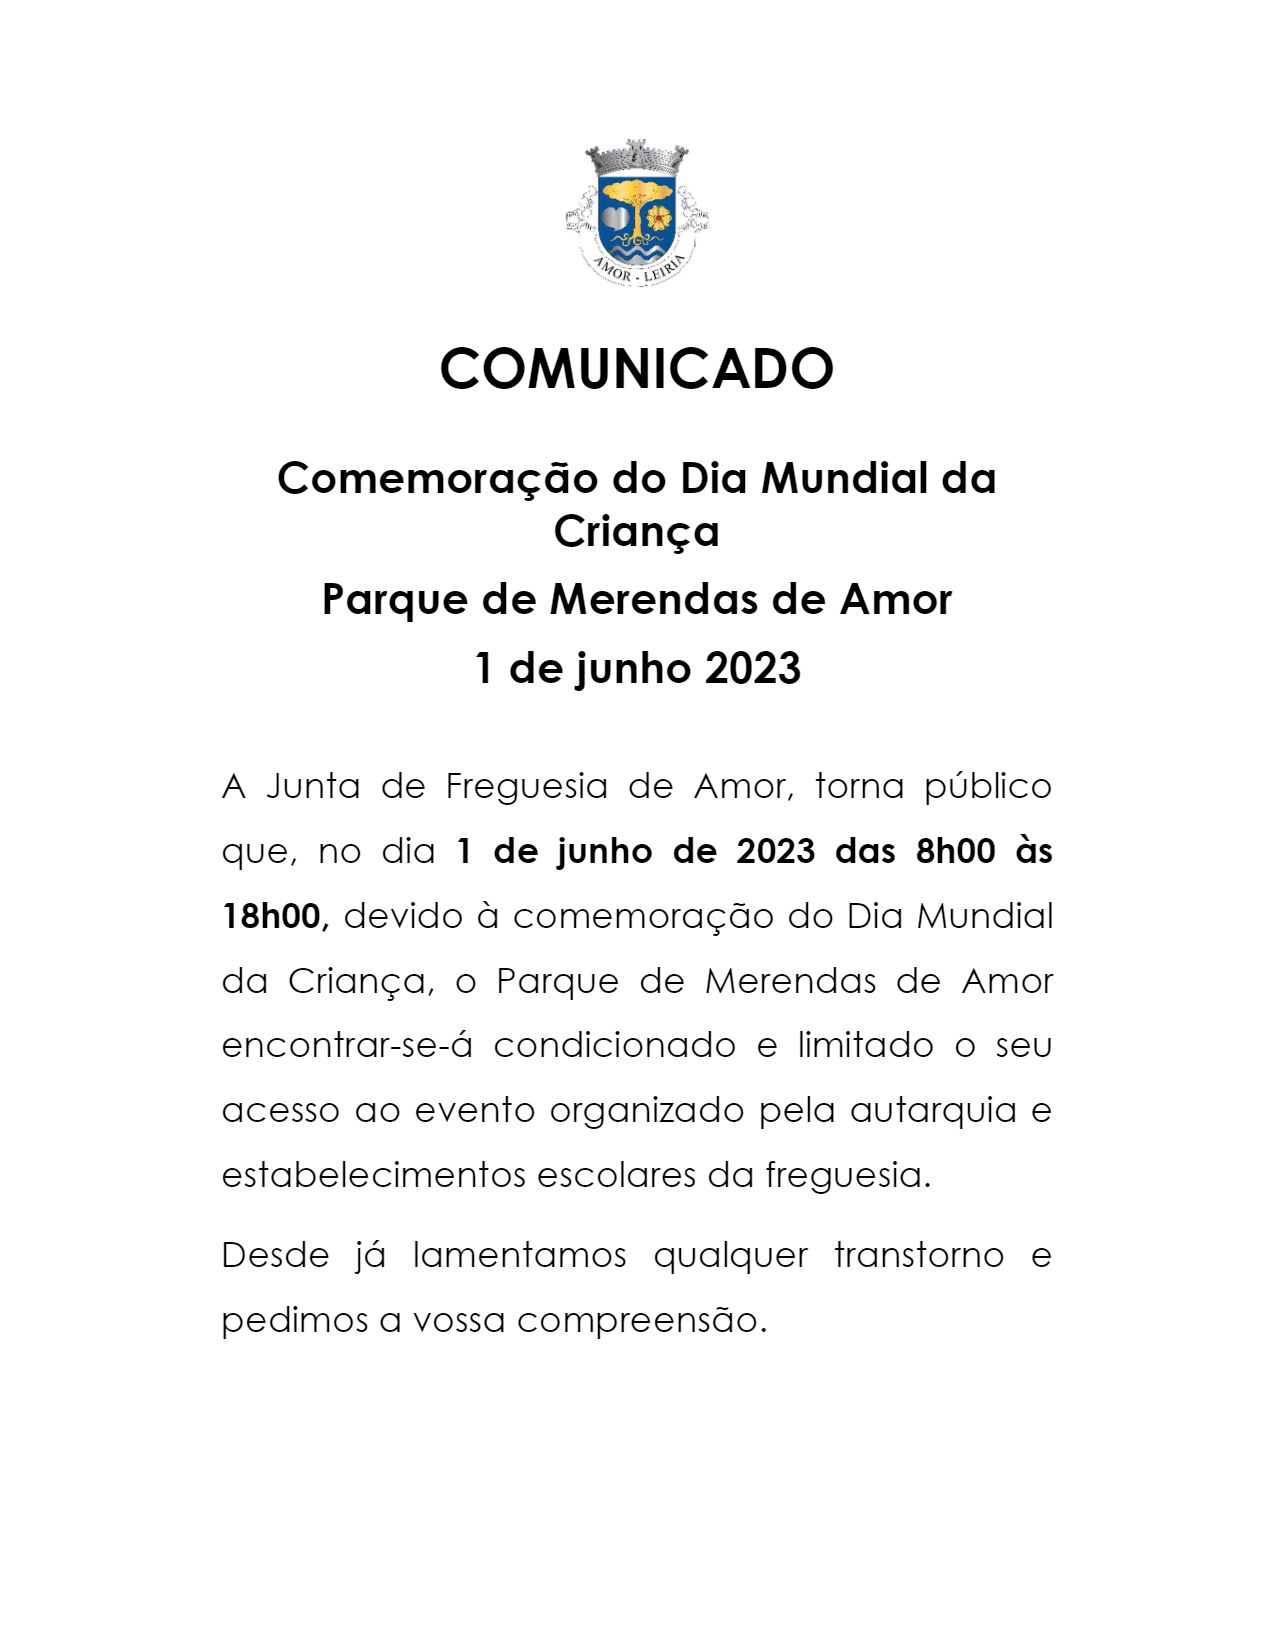 Imagem Comunicado: Parque de Merendas de Amor condicionado em 01 de junho - Comemoração Dia da Criança